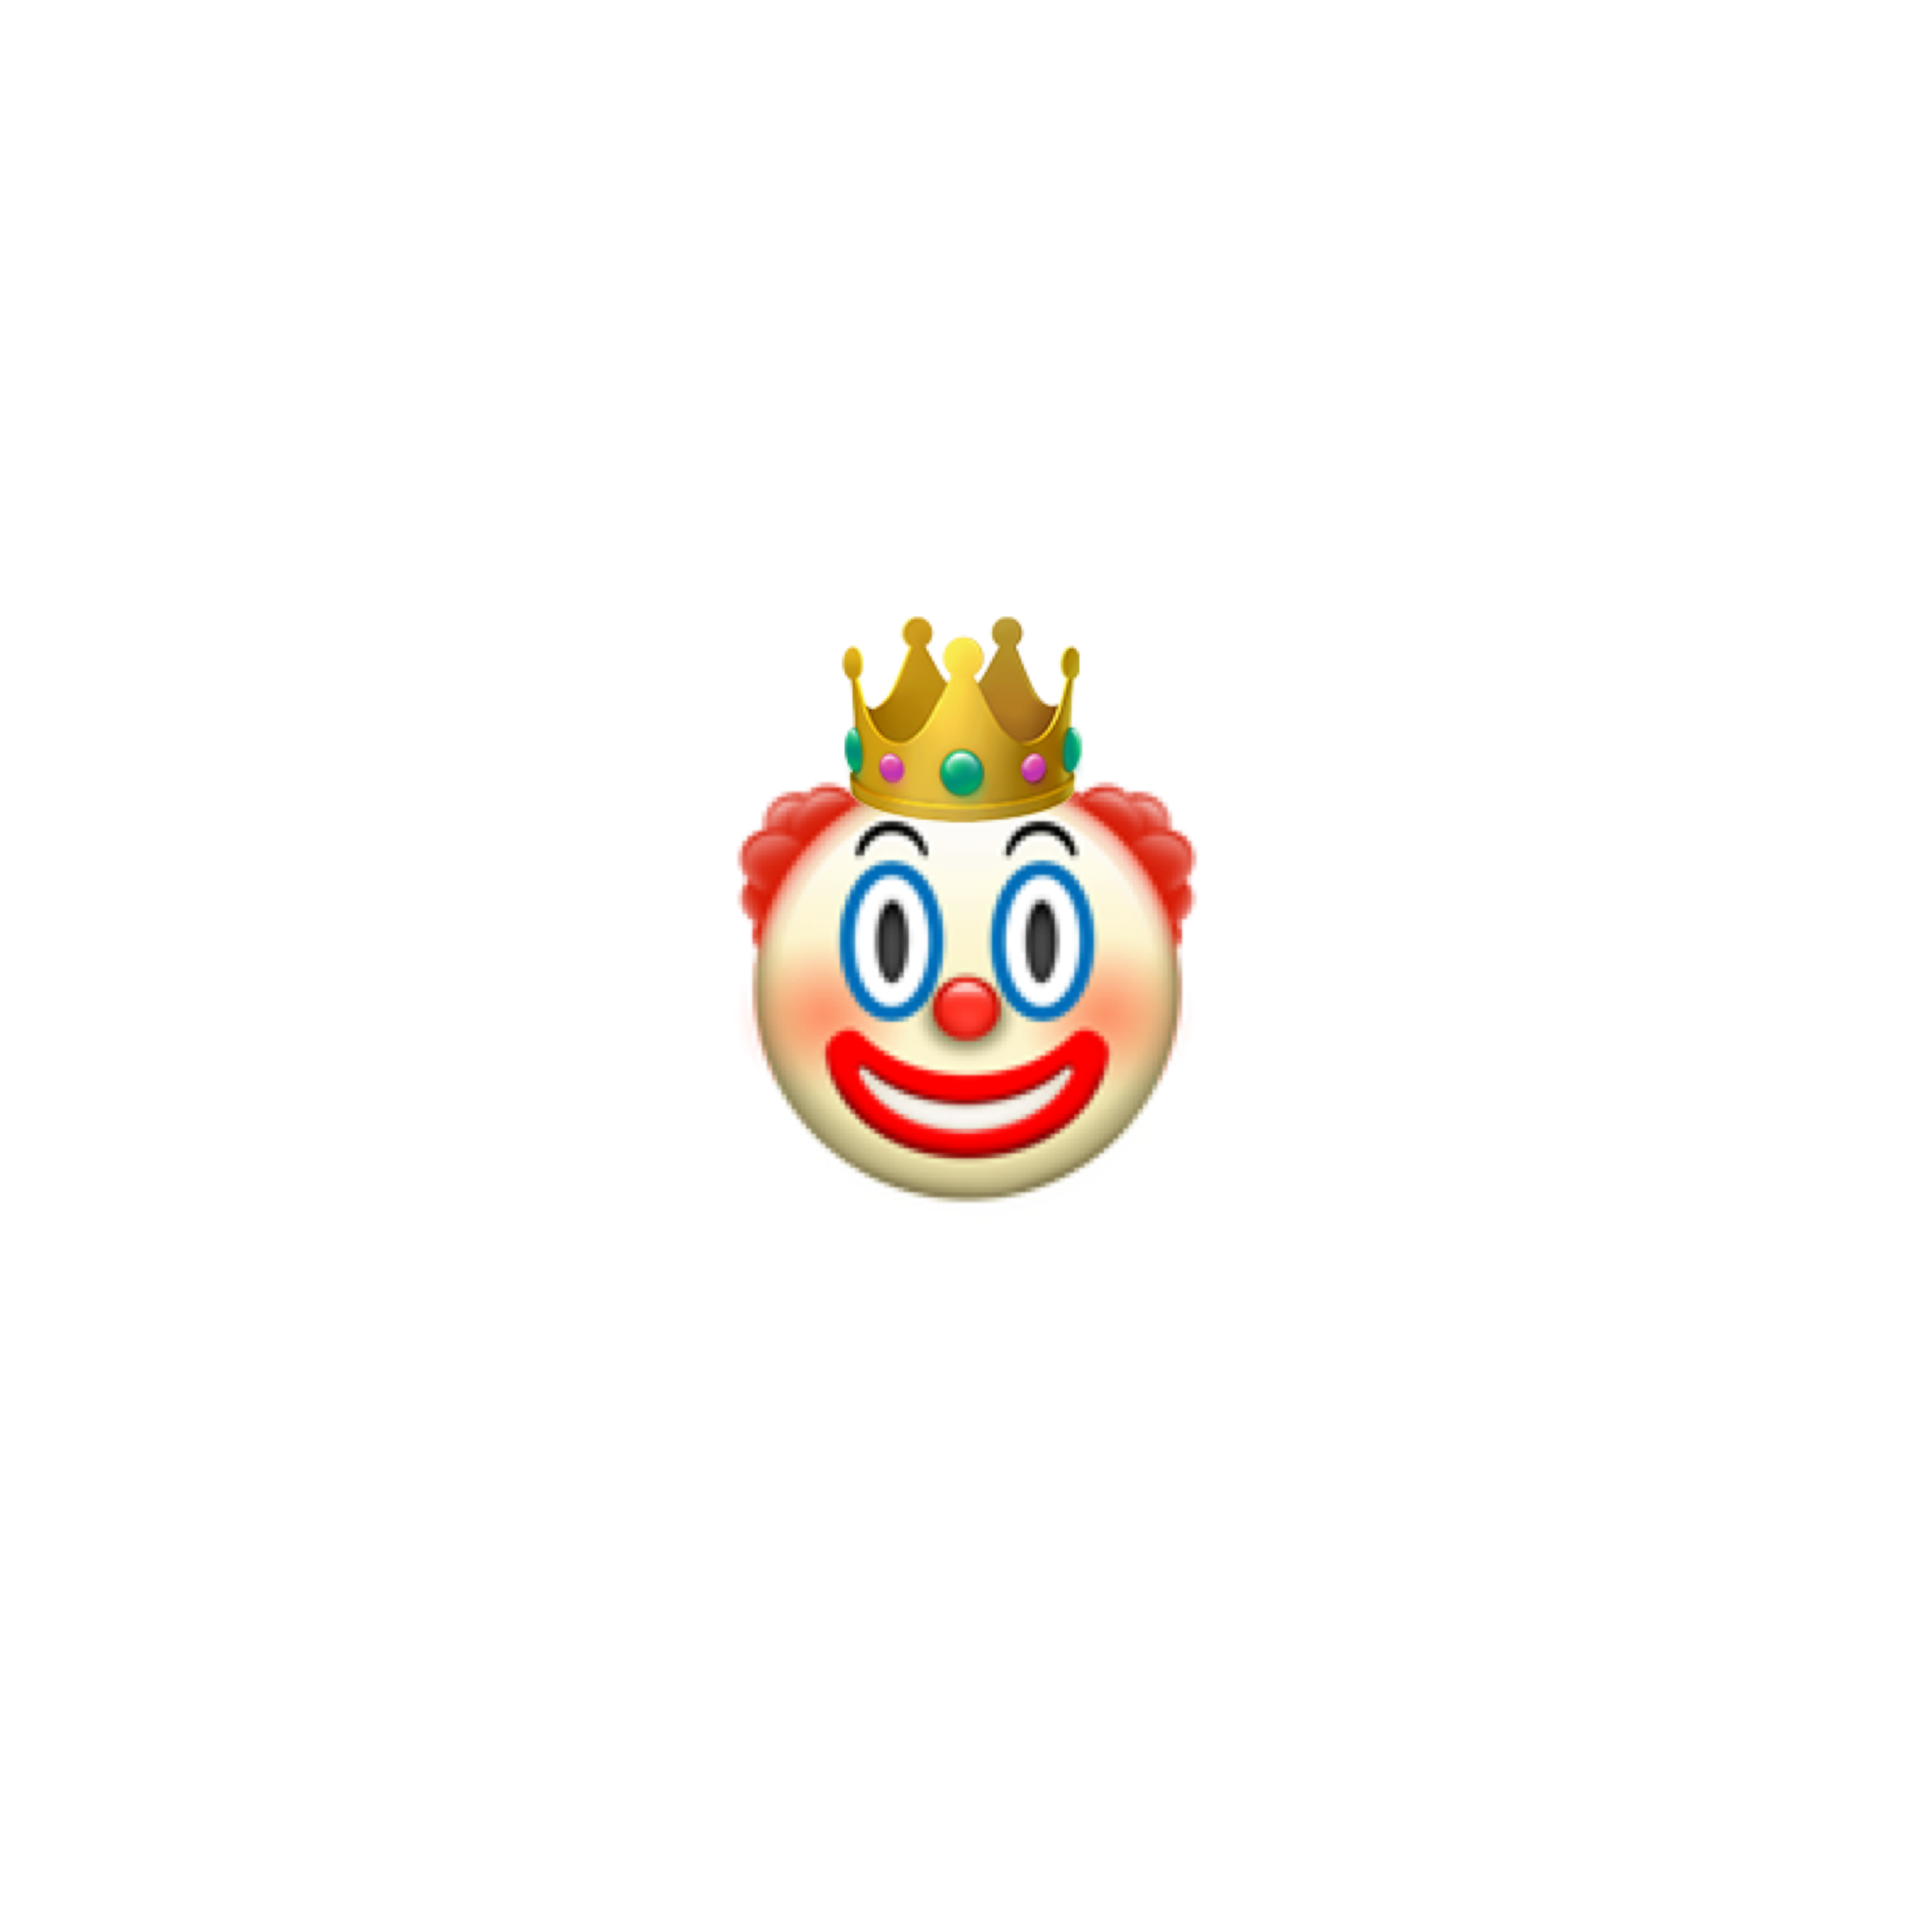 Клоун смайлик айфон. ЭМОДЖИ клоун. ЭМОДЖИ клоун Apple. Смайлик клоуна айфон. Смайлик клоуна на прозрачном фоне.